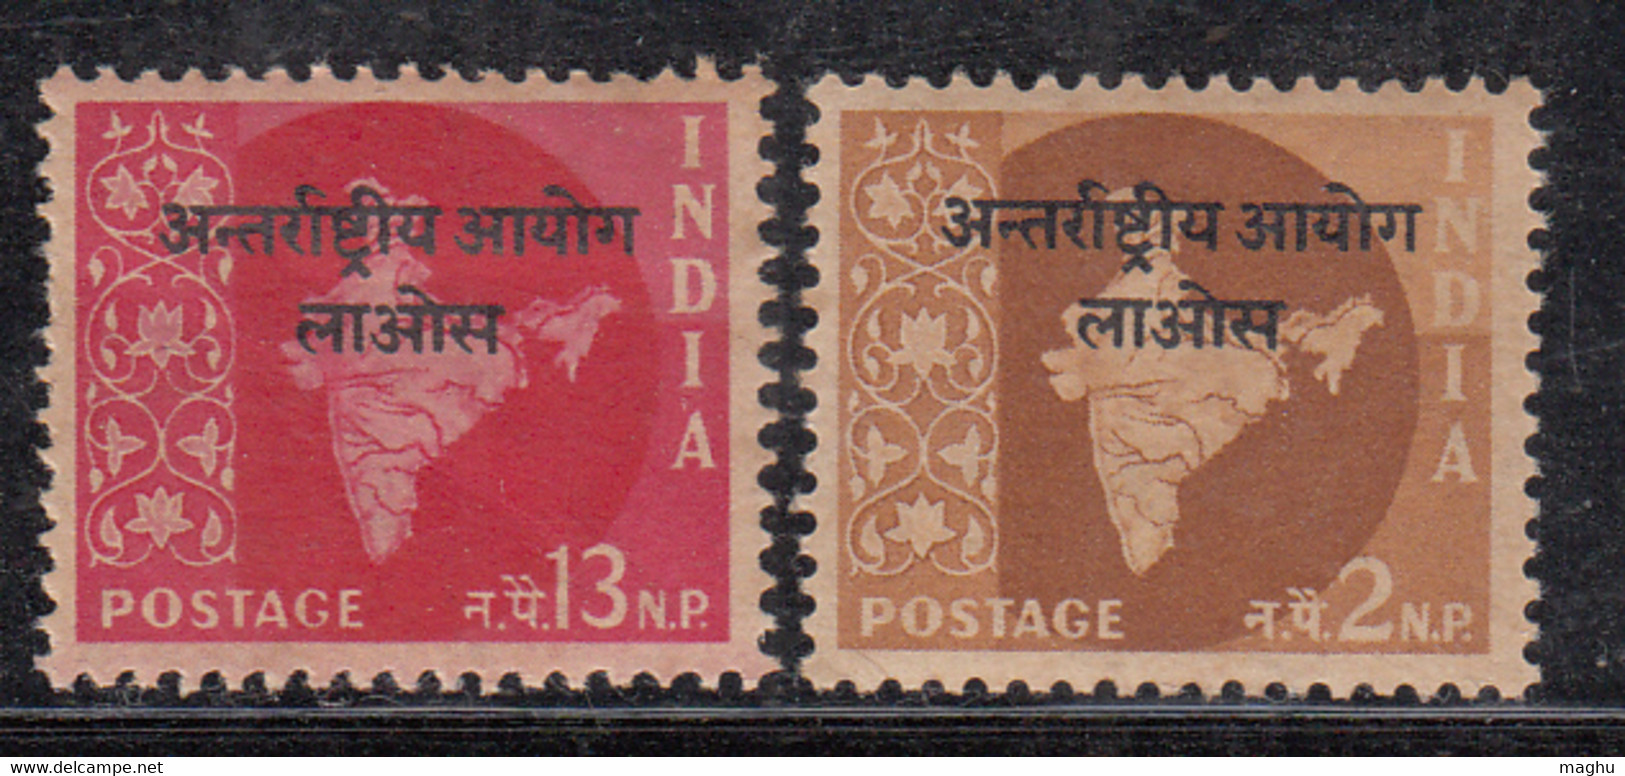 2v Star Watermark Series, Laos Opt. On  Map, India MNH 1957 - Militärpostmarken